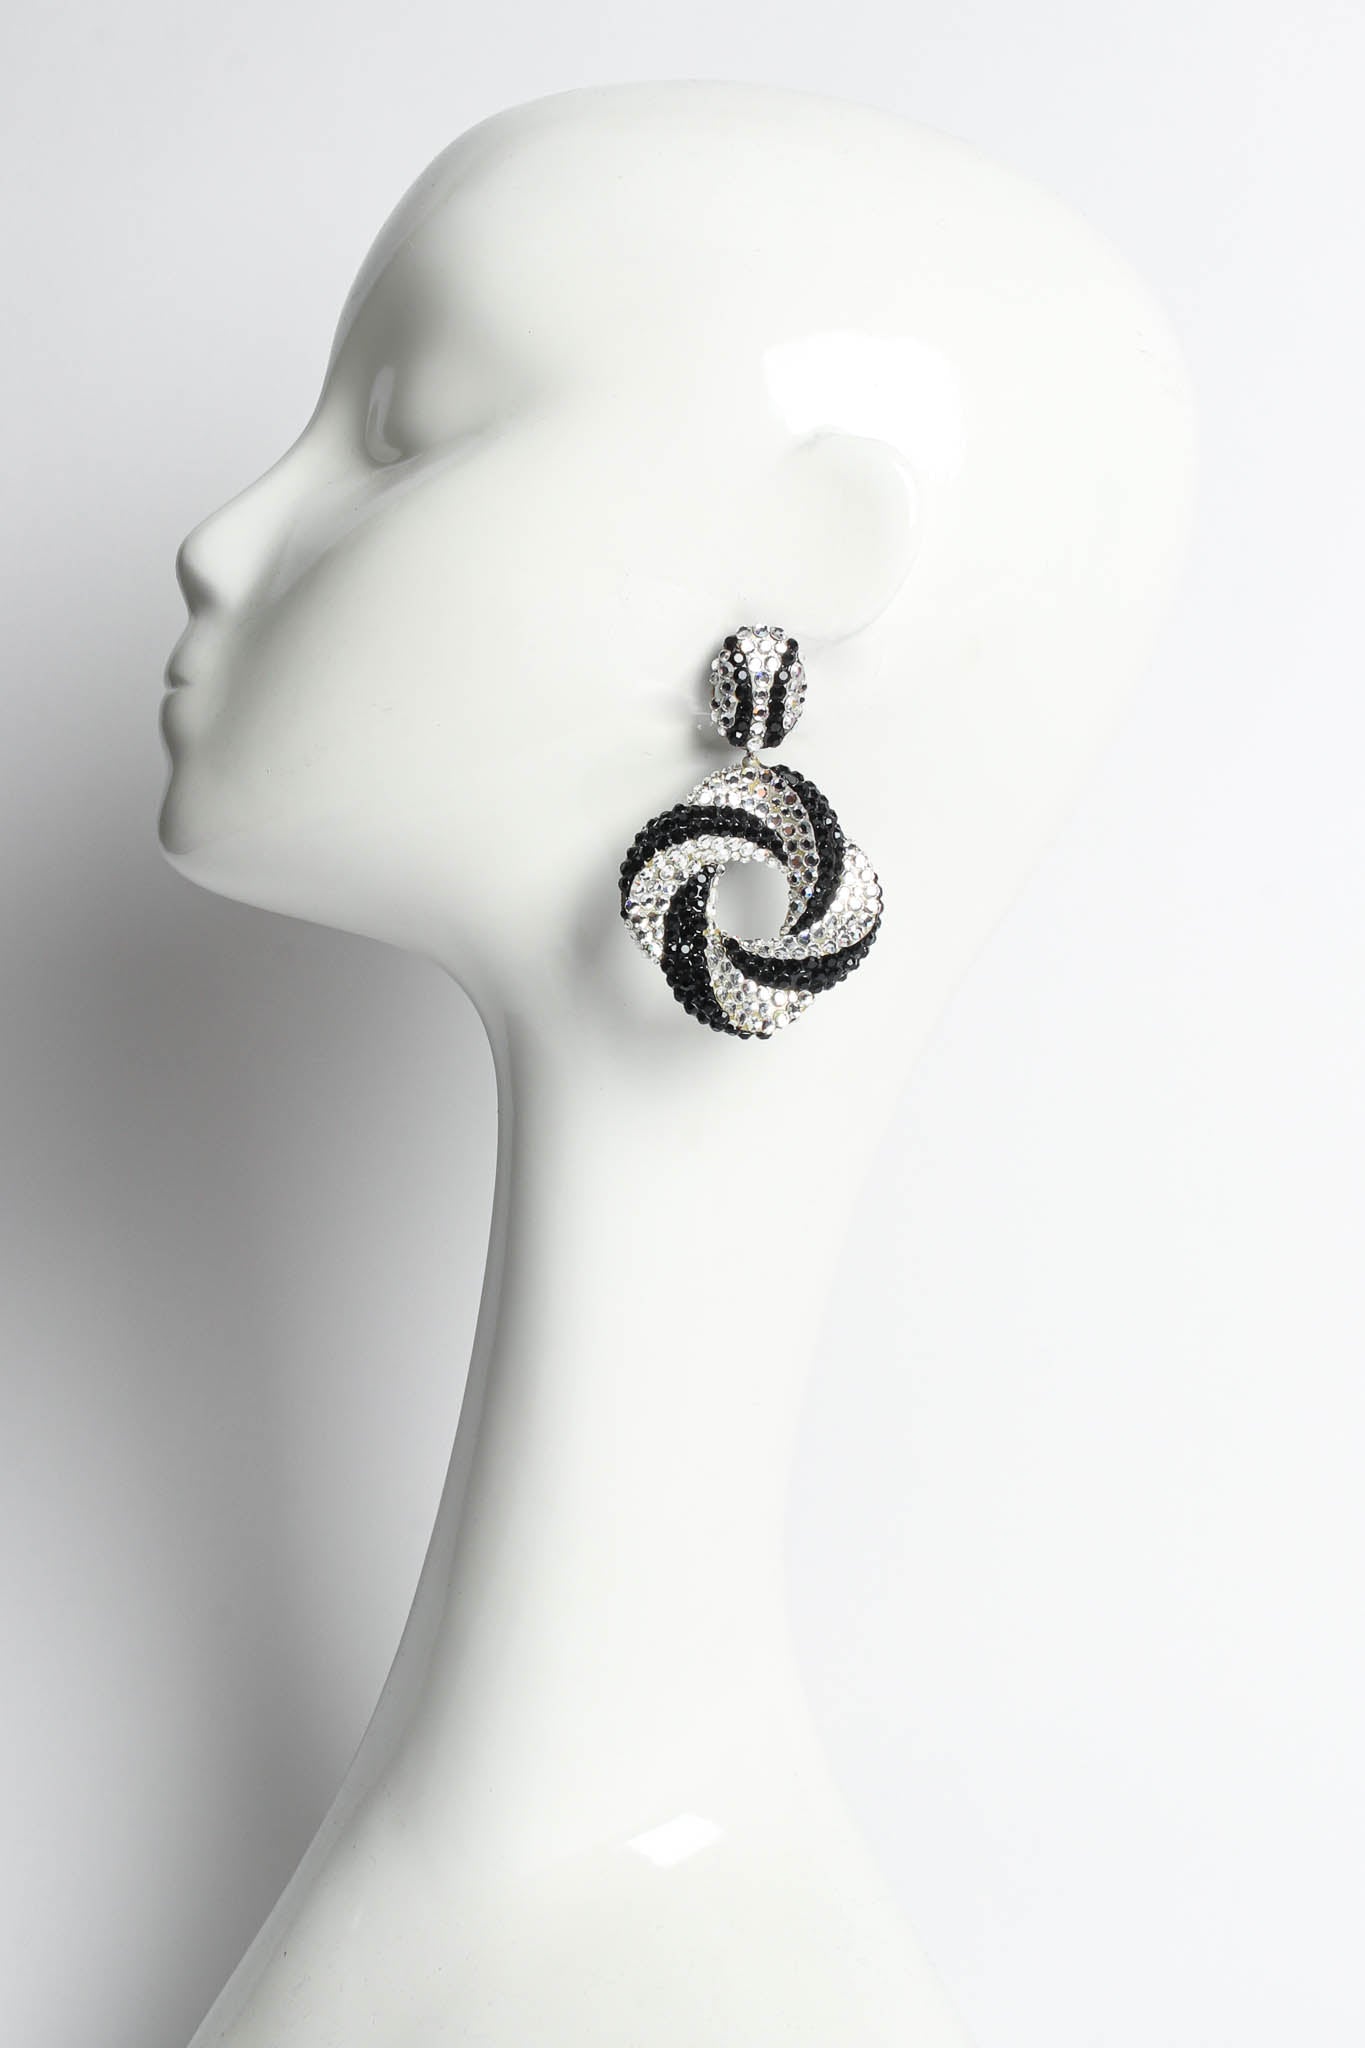 Swirl Knot Rhinestone Earrings